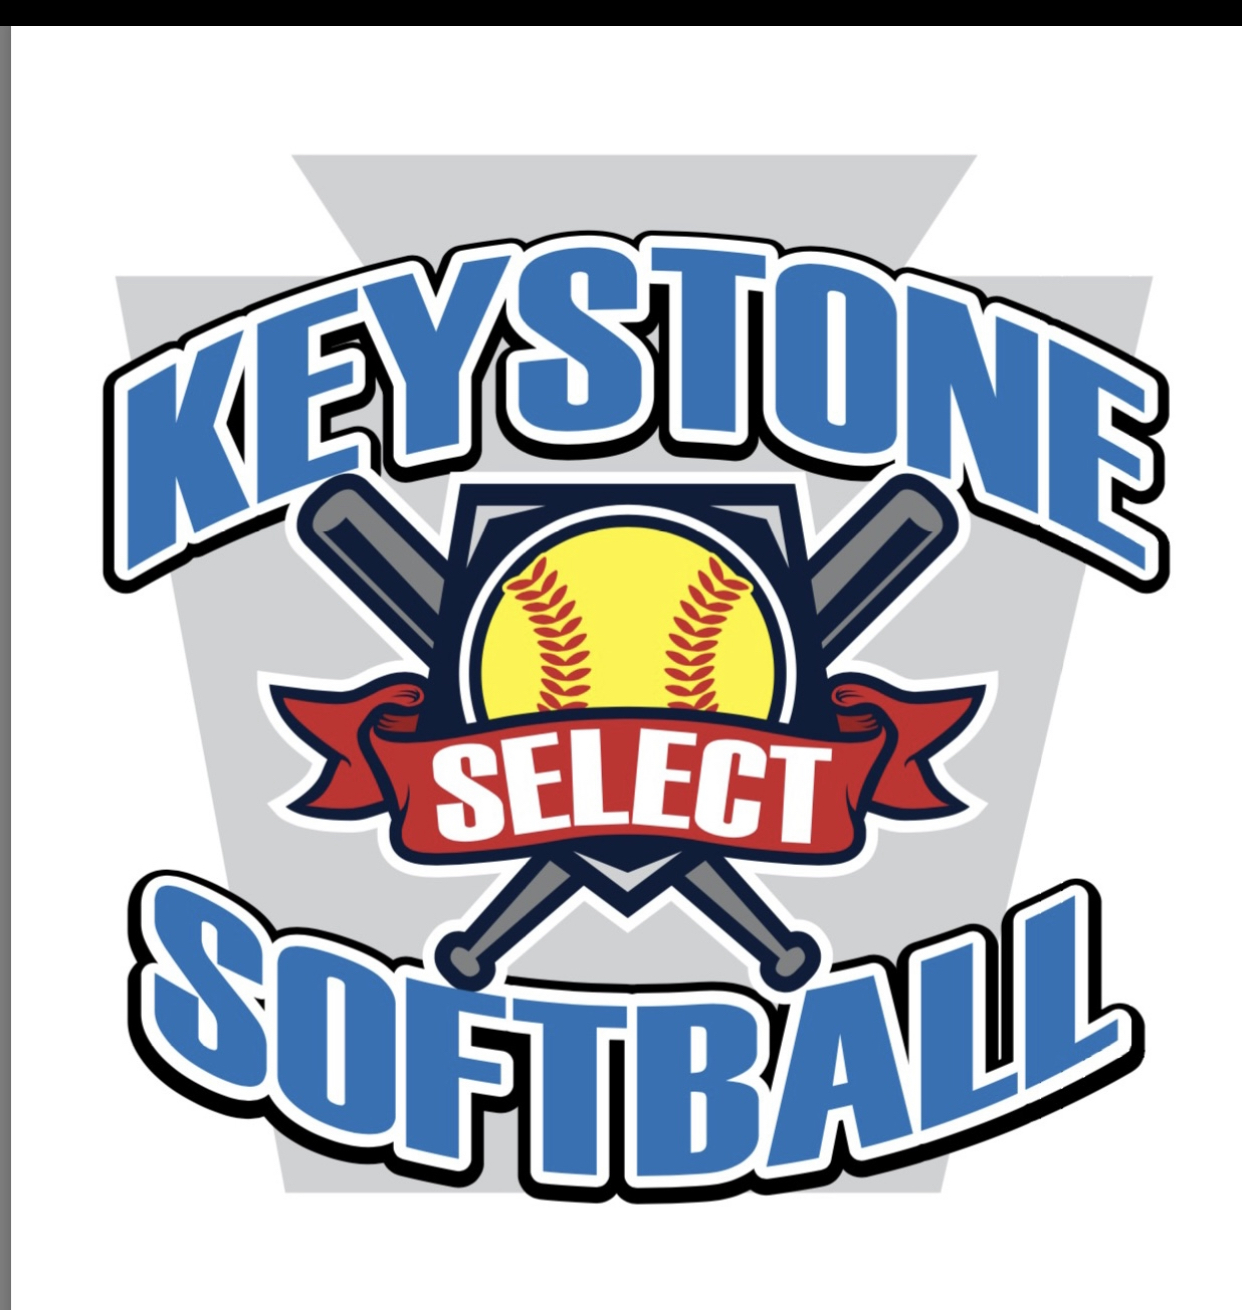 Keystone Select Softball PA State Championship Tournament Logo